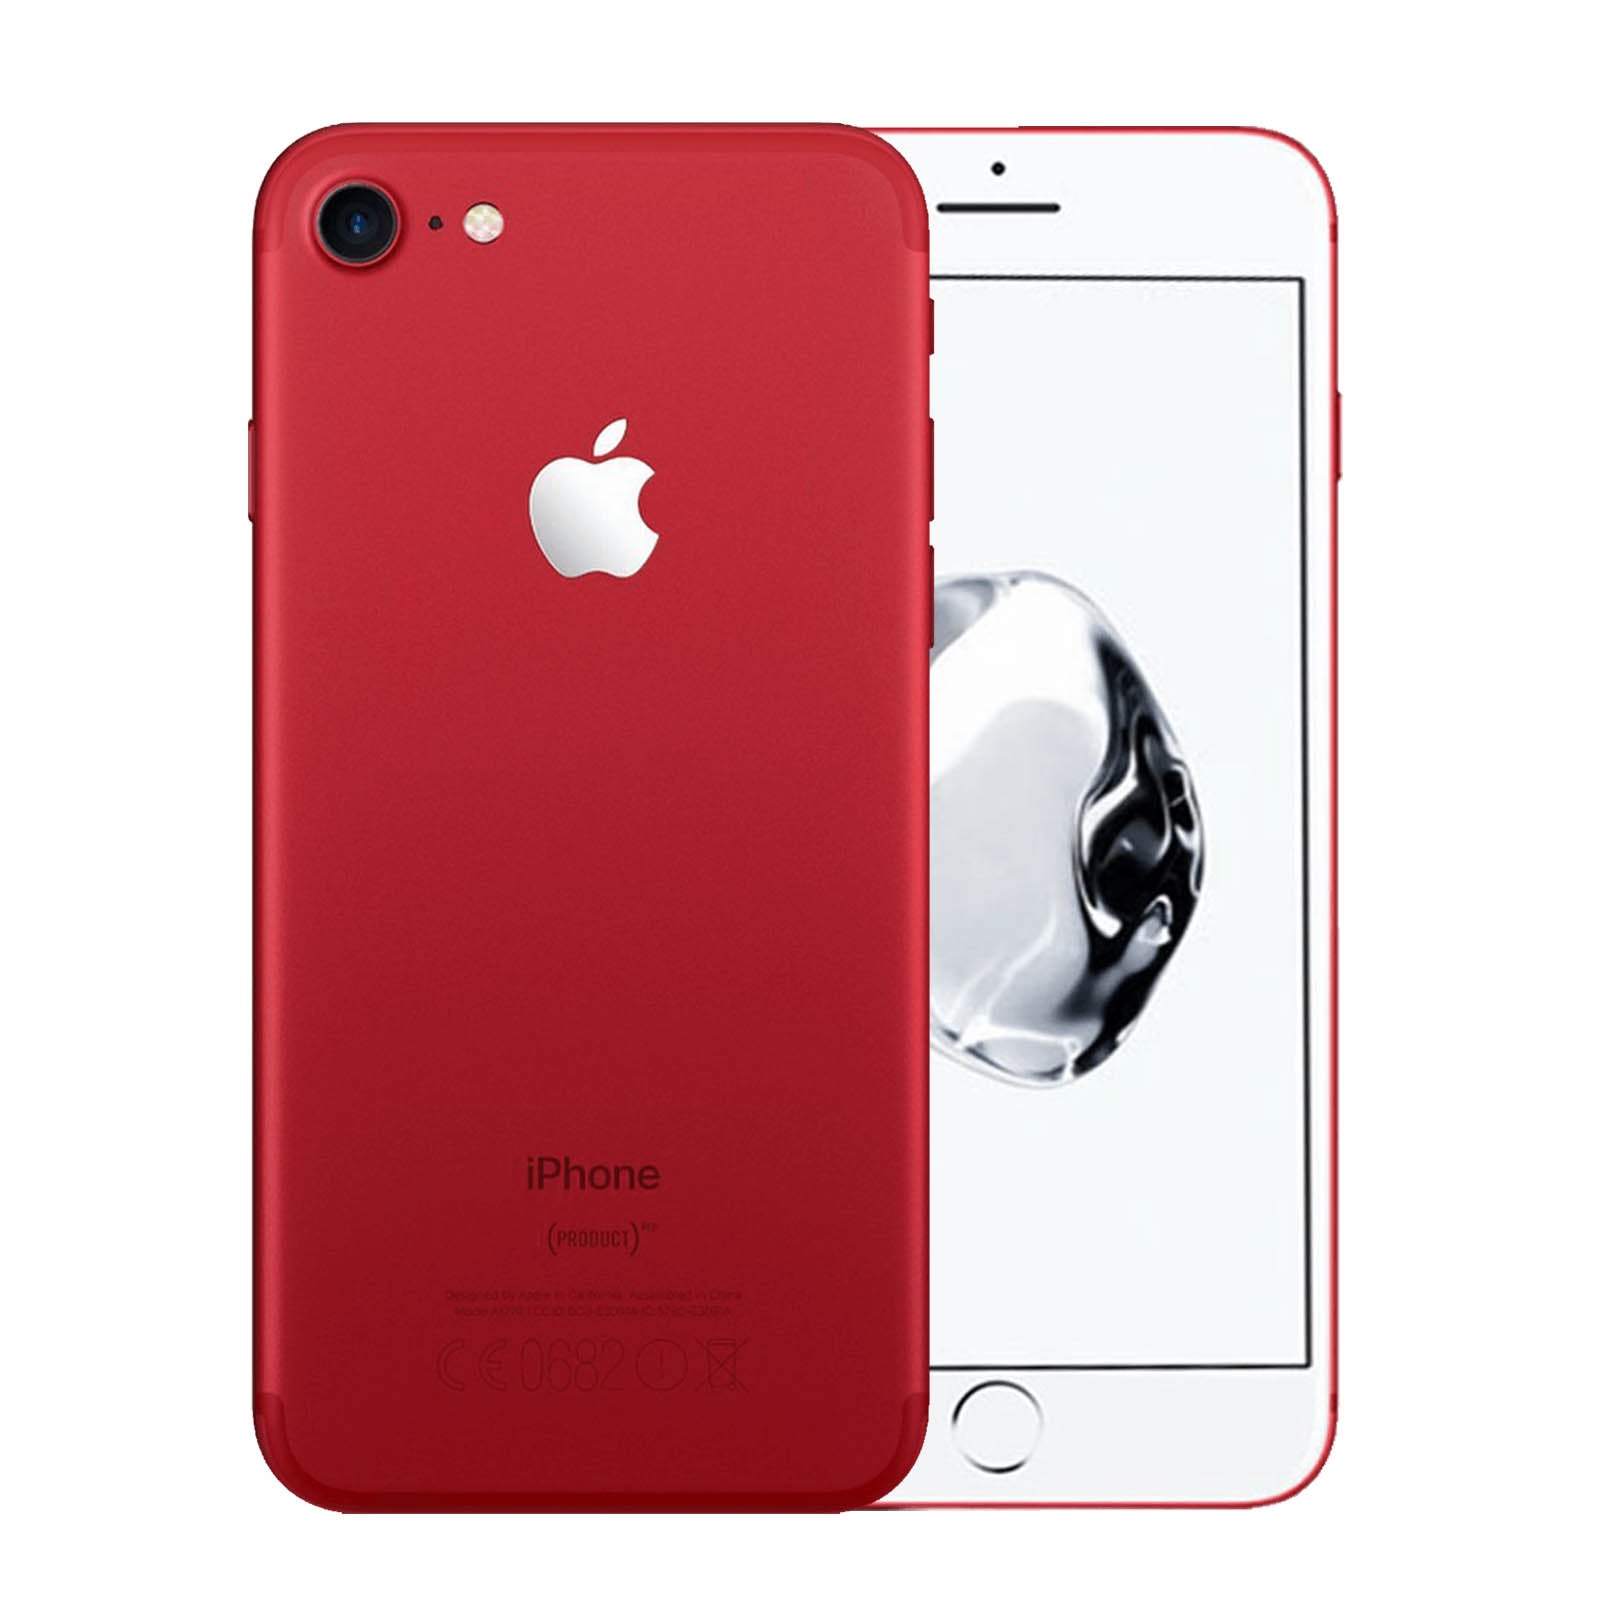 Apple iPhone 7 256GB Product Red Razonable - Desbloqueado